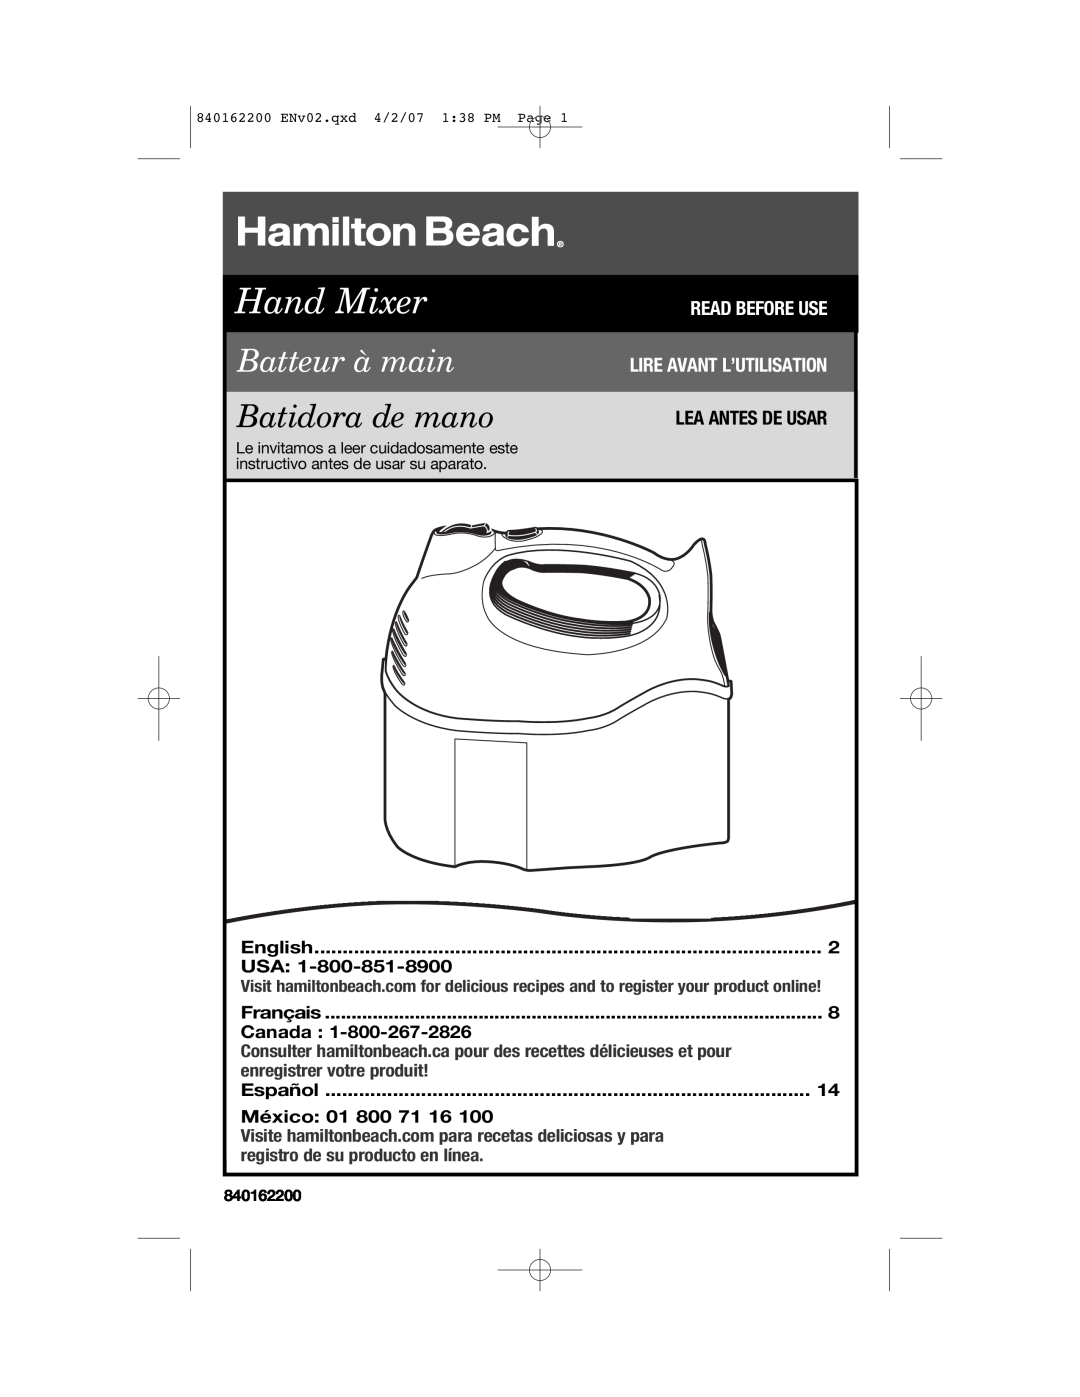 Hamilton Beach 62695NC manual Lea Antes De Usar, English, Français, Canada, Español, México 01 800, Hand Mixer 